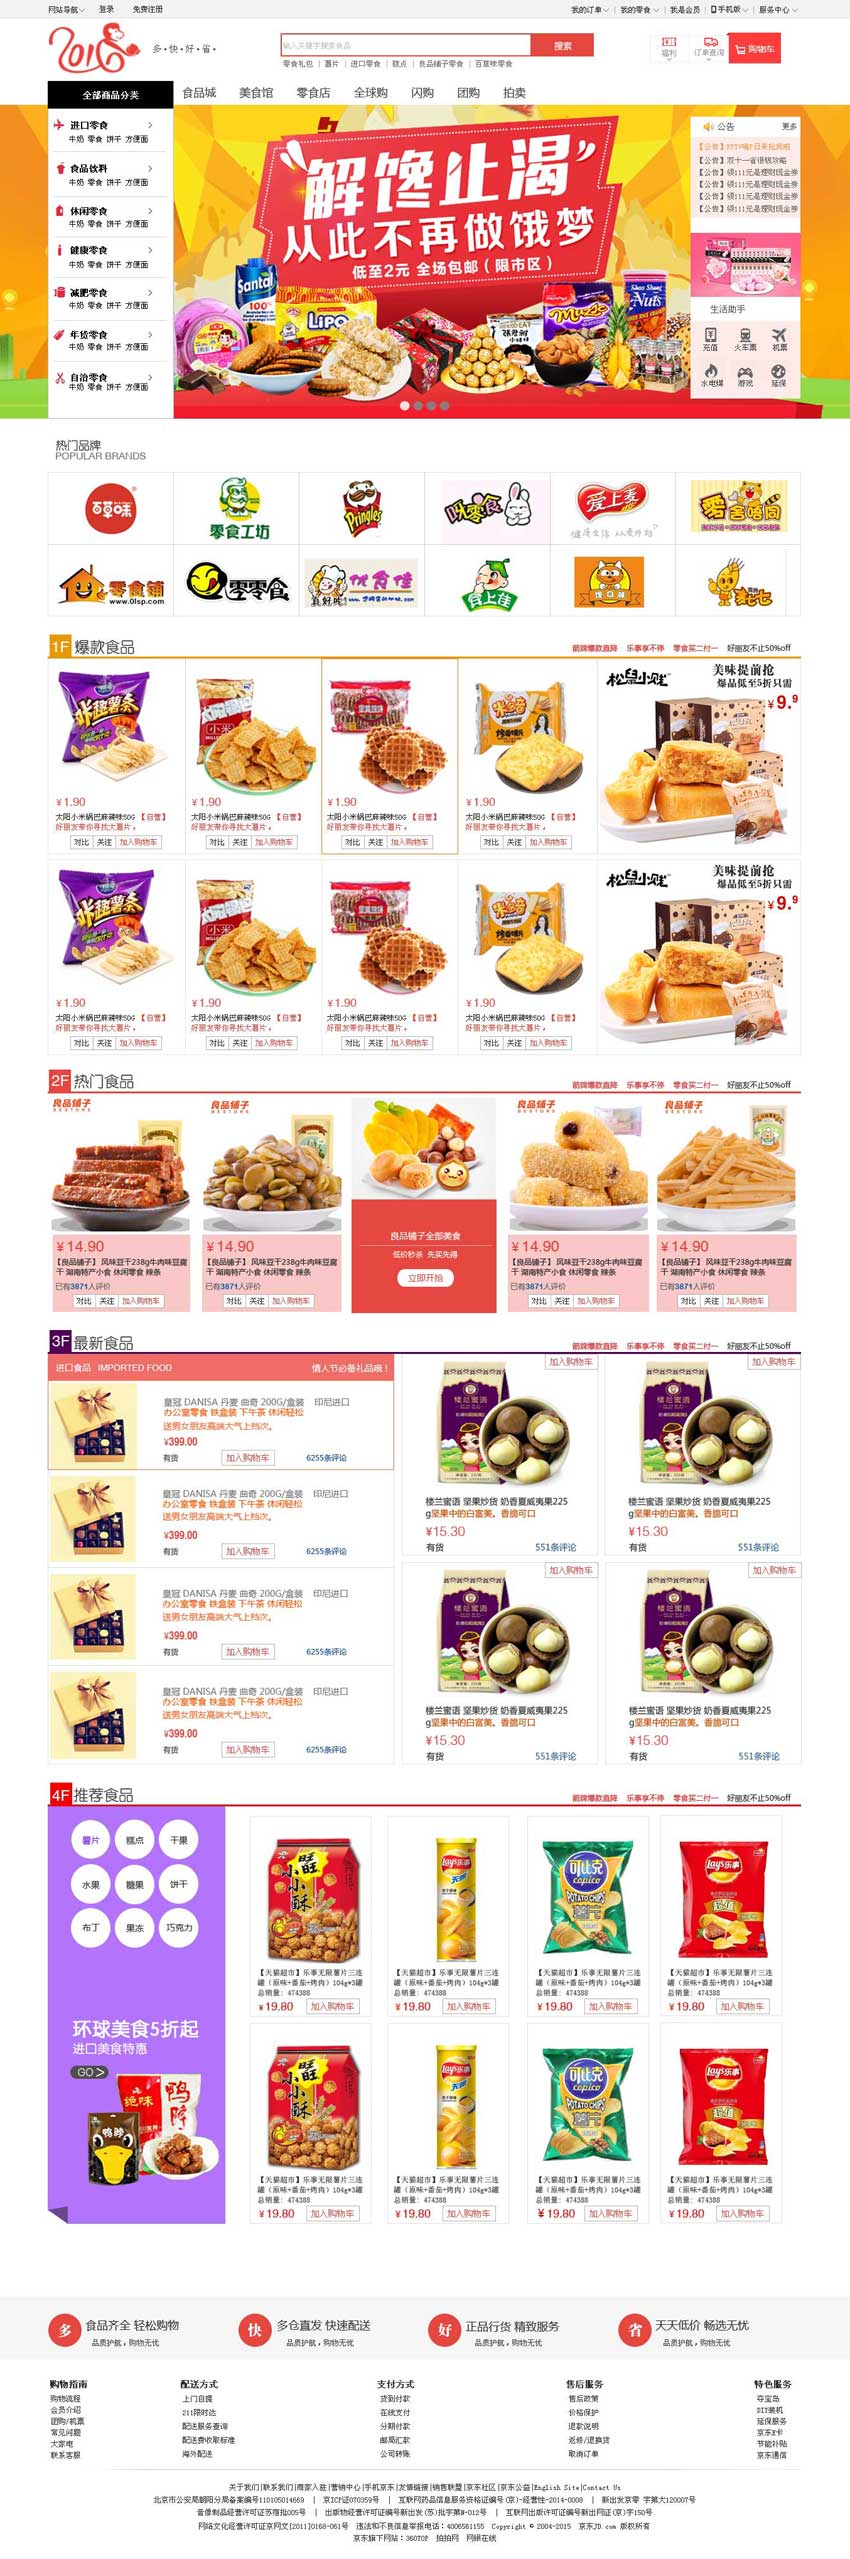 网上食品购物商城首页设计模板_商城网站模板插图源码资源库